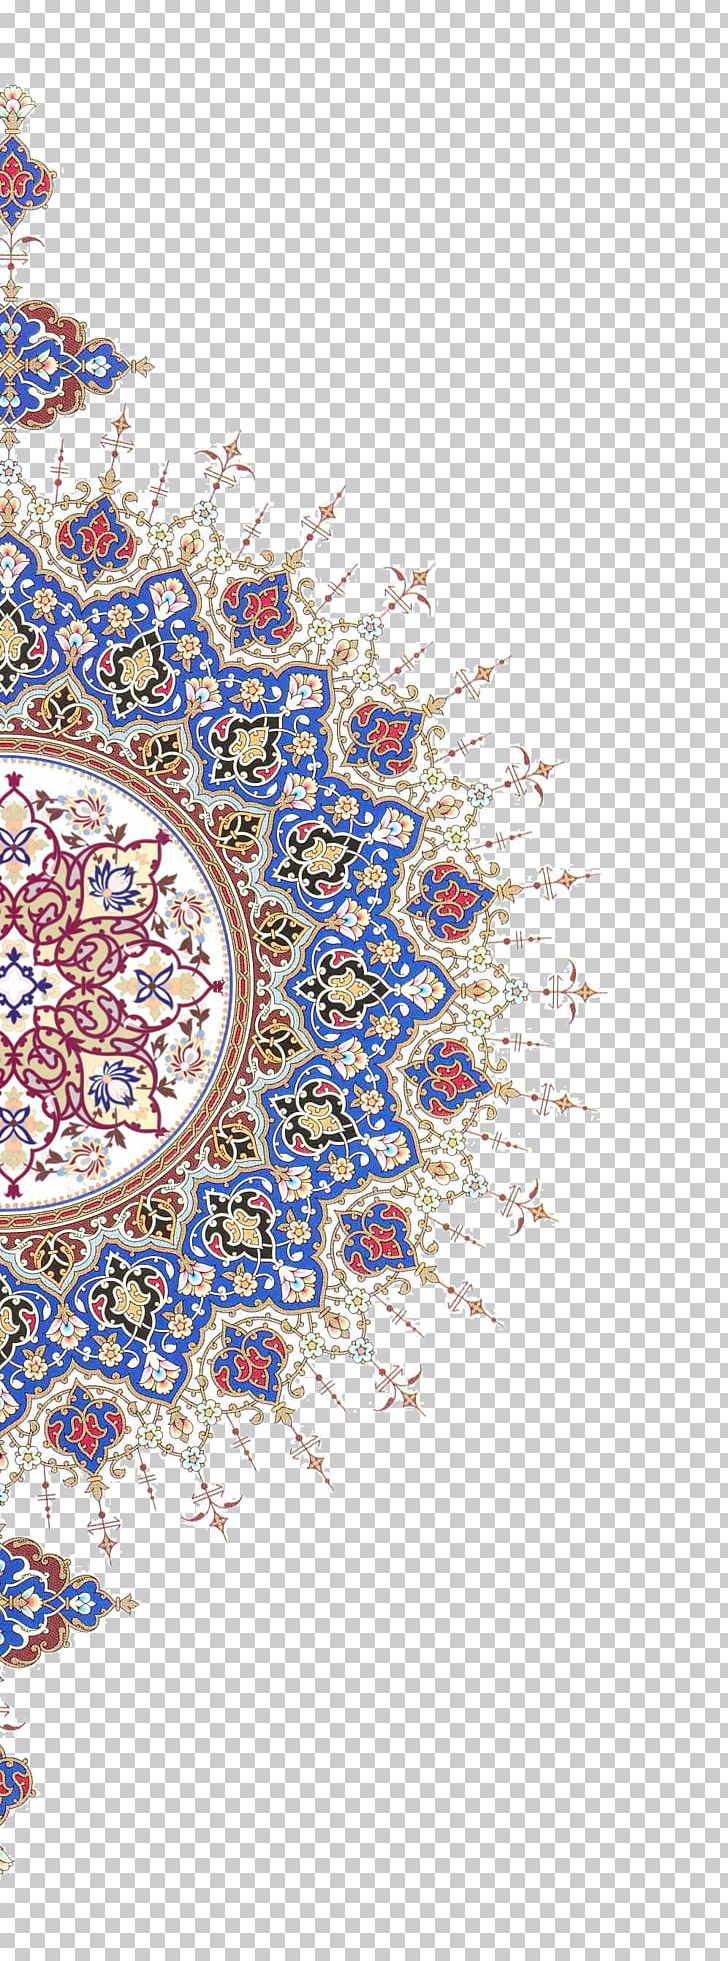 arabesque designs in islamic art